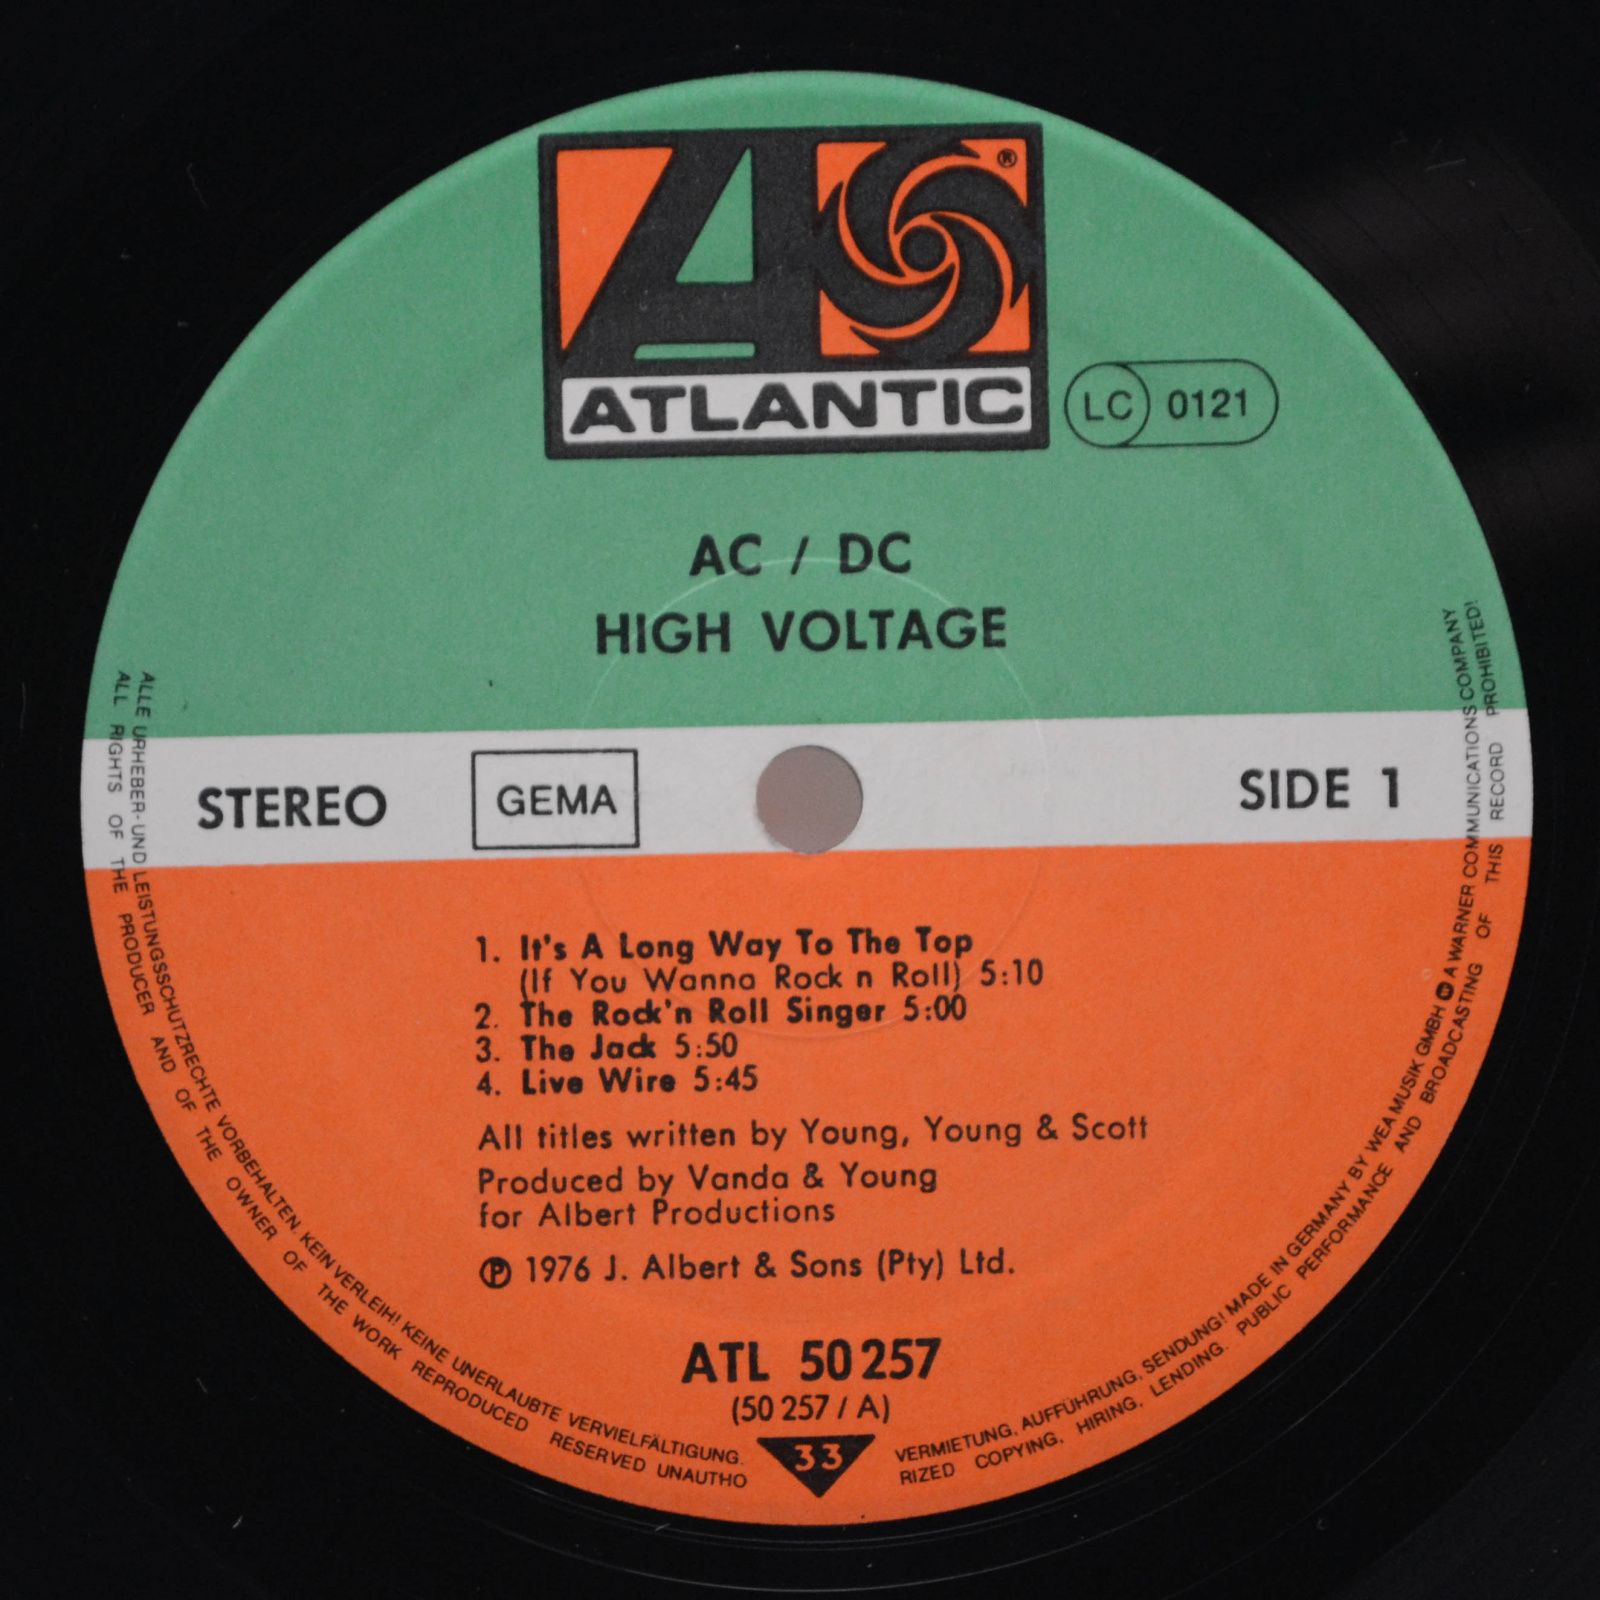 AC/DC — High Voltage, 1976